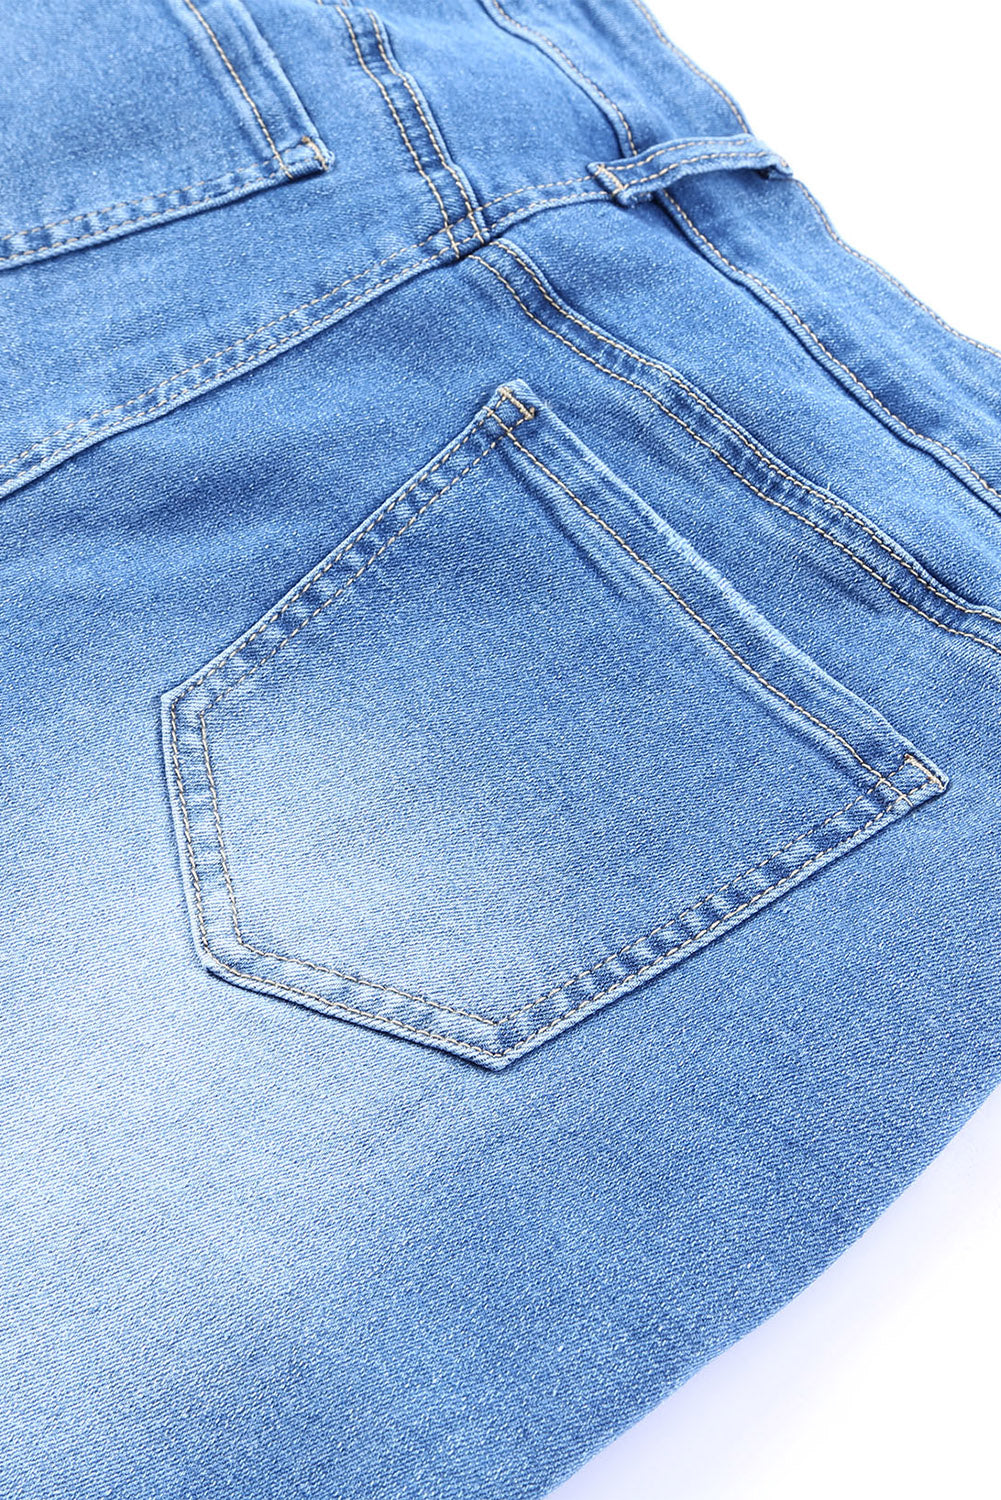 Sky Blue Vintage Frayed Tassel Bell Bottom Pants Jeans JT's Designer Fashion